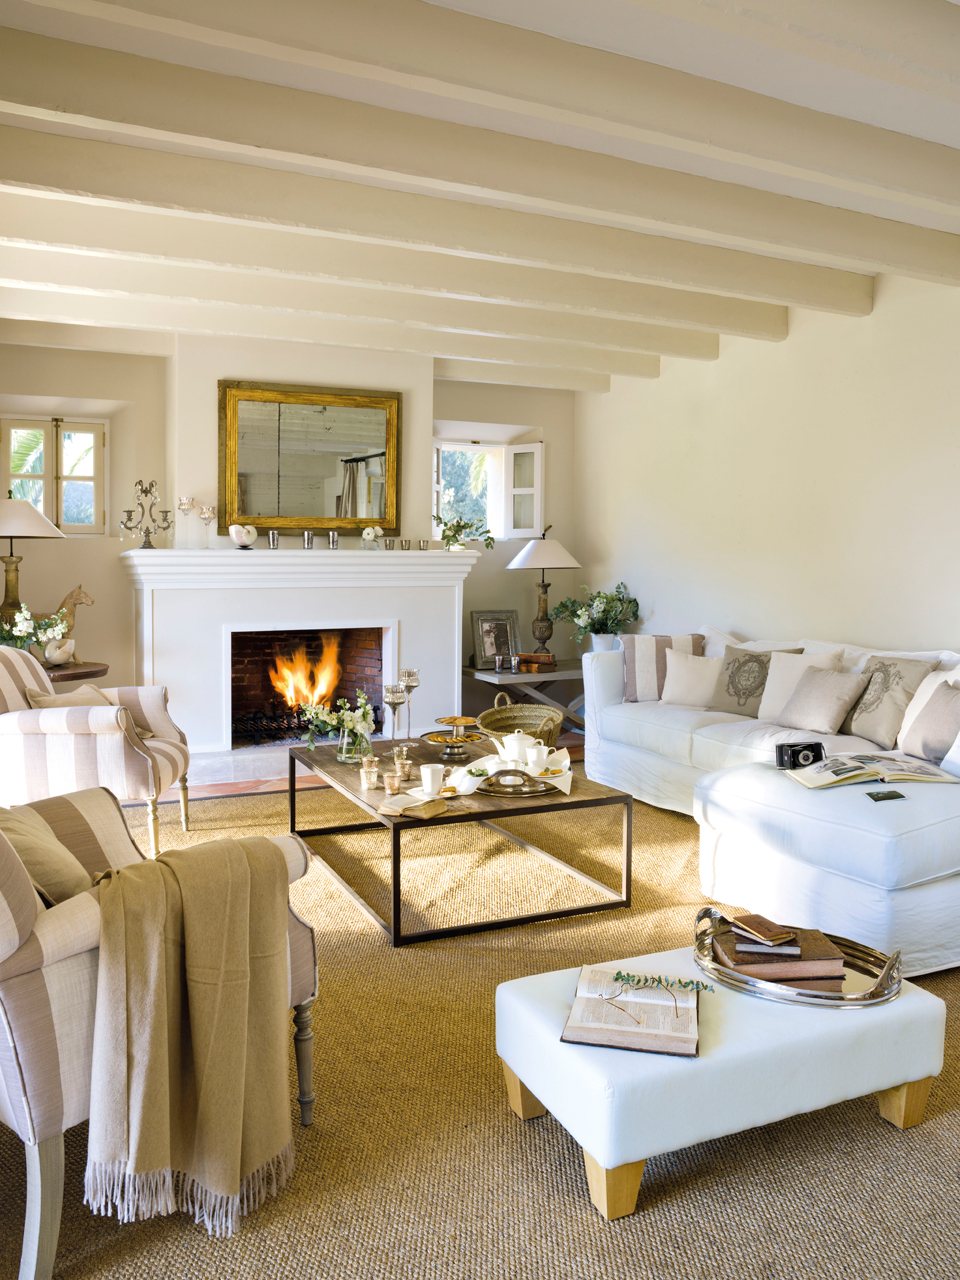 Salón de estilo provenzal con chimenea y sofá blanco con chaise longue